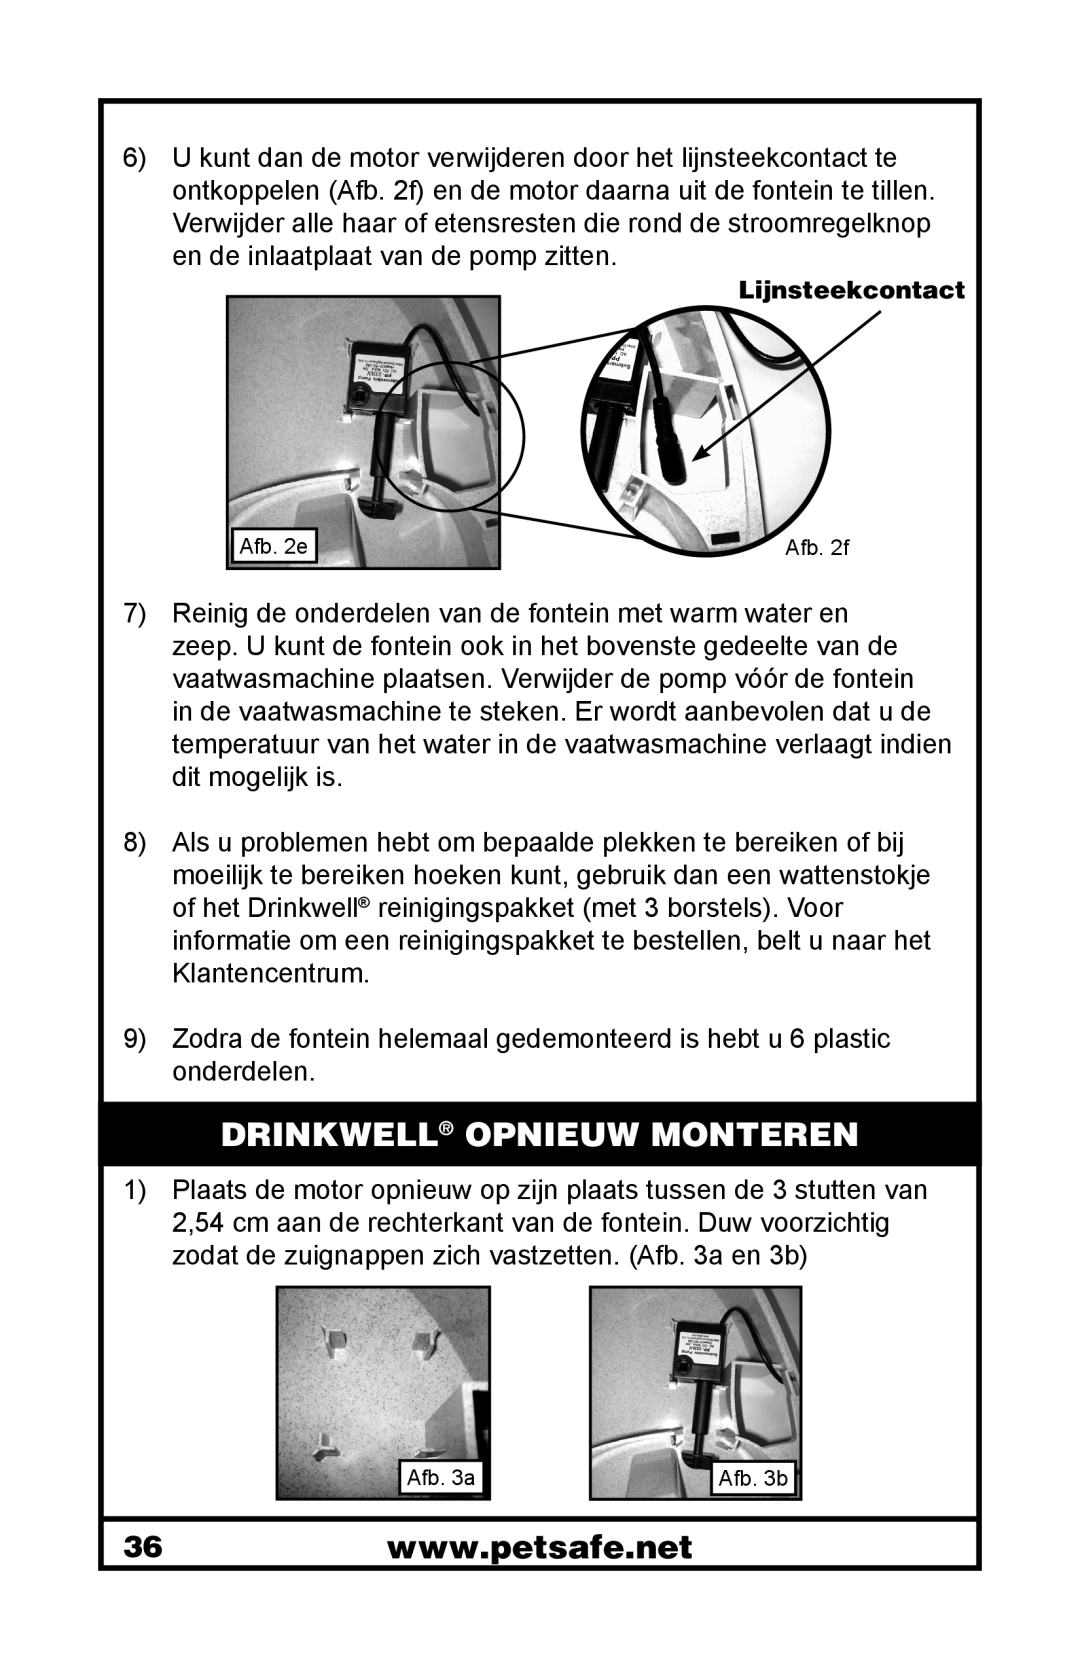 Petsafe 400-1255-19 manuel dutilisation Drinkwell Opnieuw Monteren, Lijnsteekcontact 